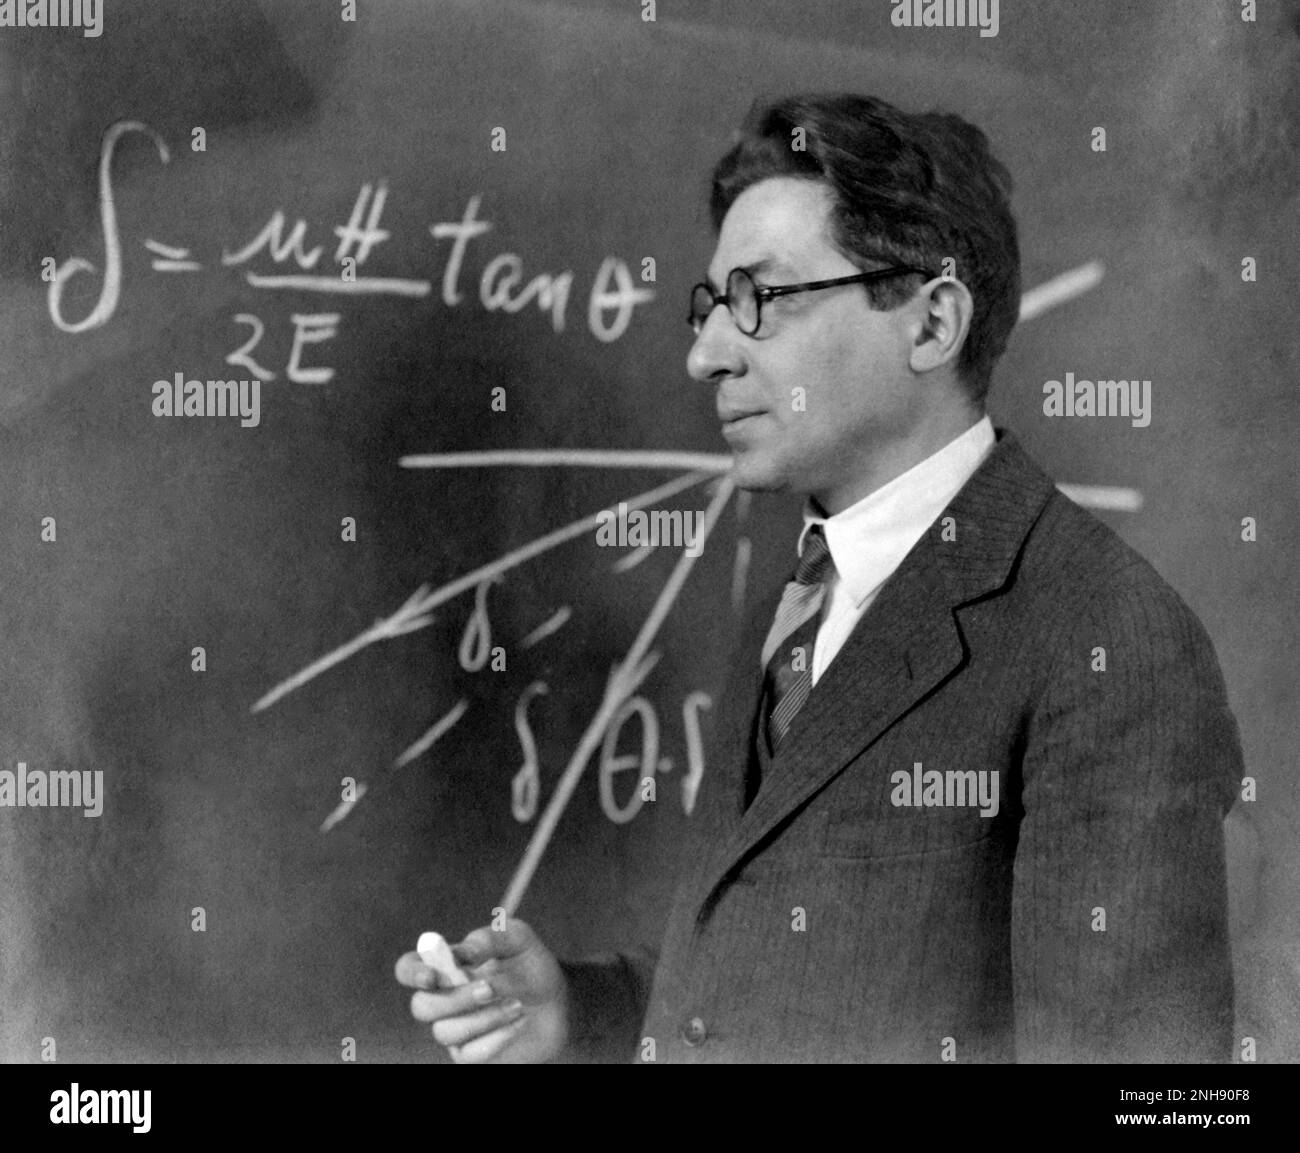 Isidor Isaac Rabi (1898-1988), amerikanischer Physiker. Rabi gewann 1944 den Nobelpreis für Physik für seine Entdeckung der Kernspinresonanz, die in der Magnetresonanztomographie verwendet wird. Stockfoto